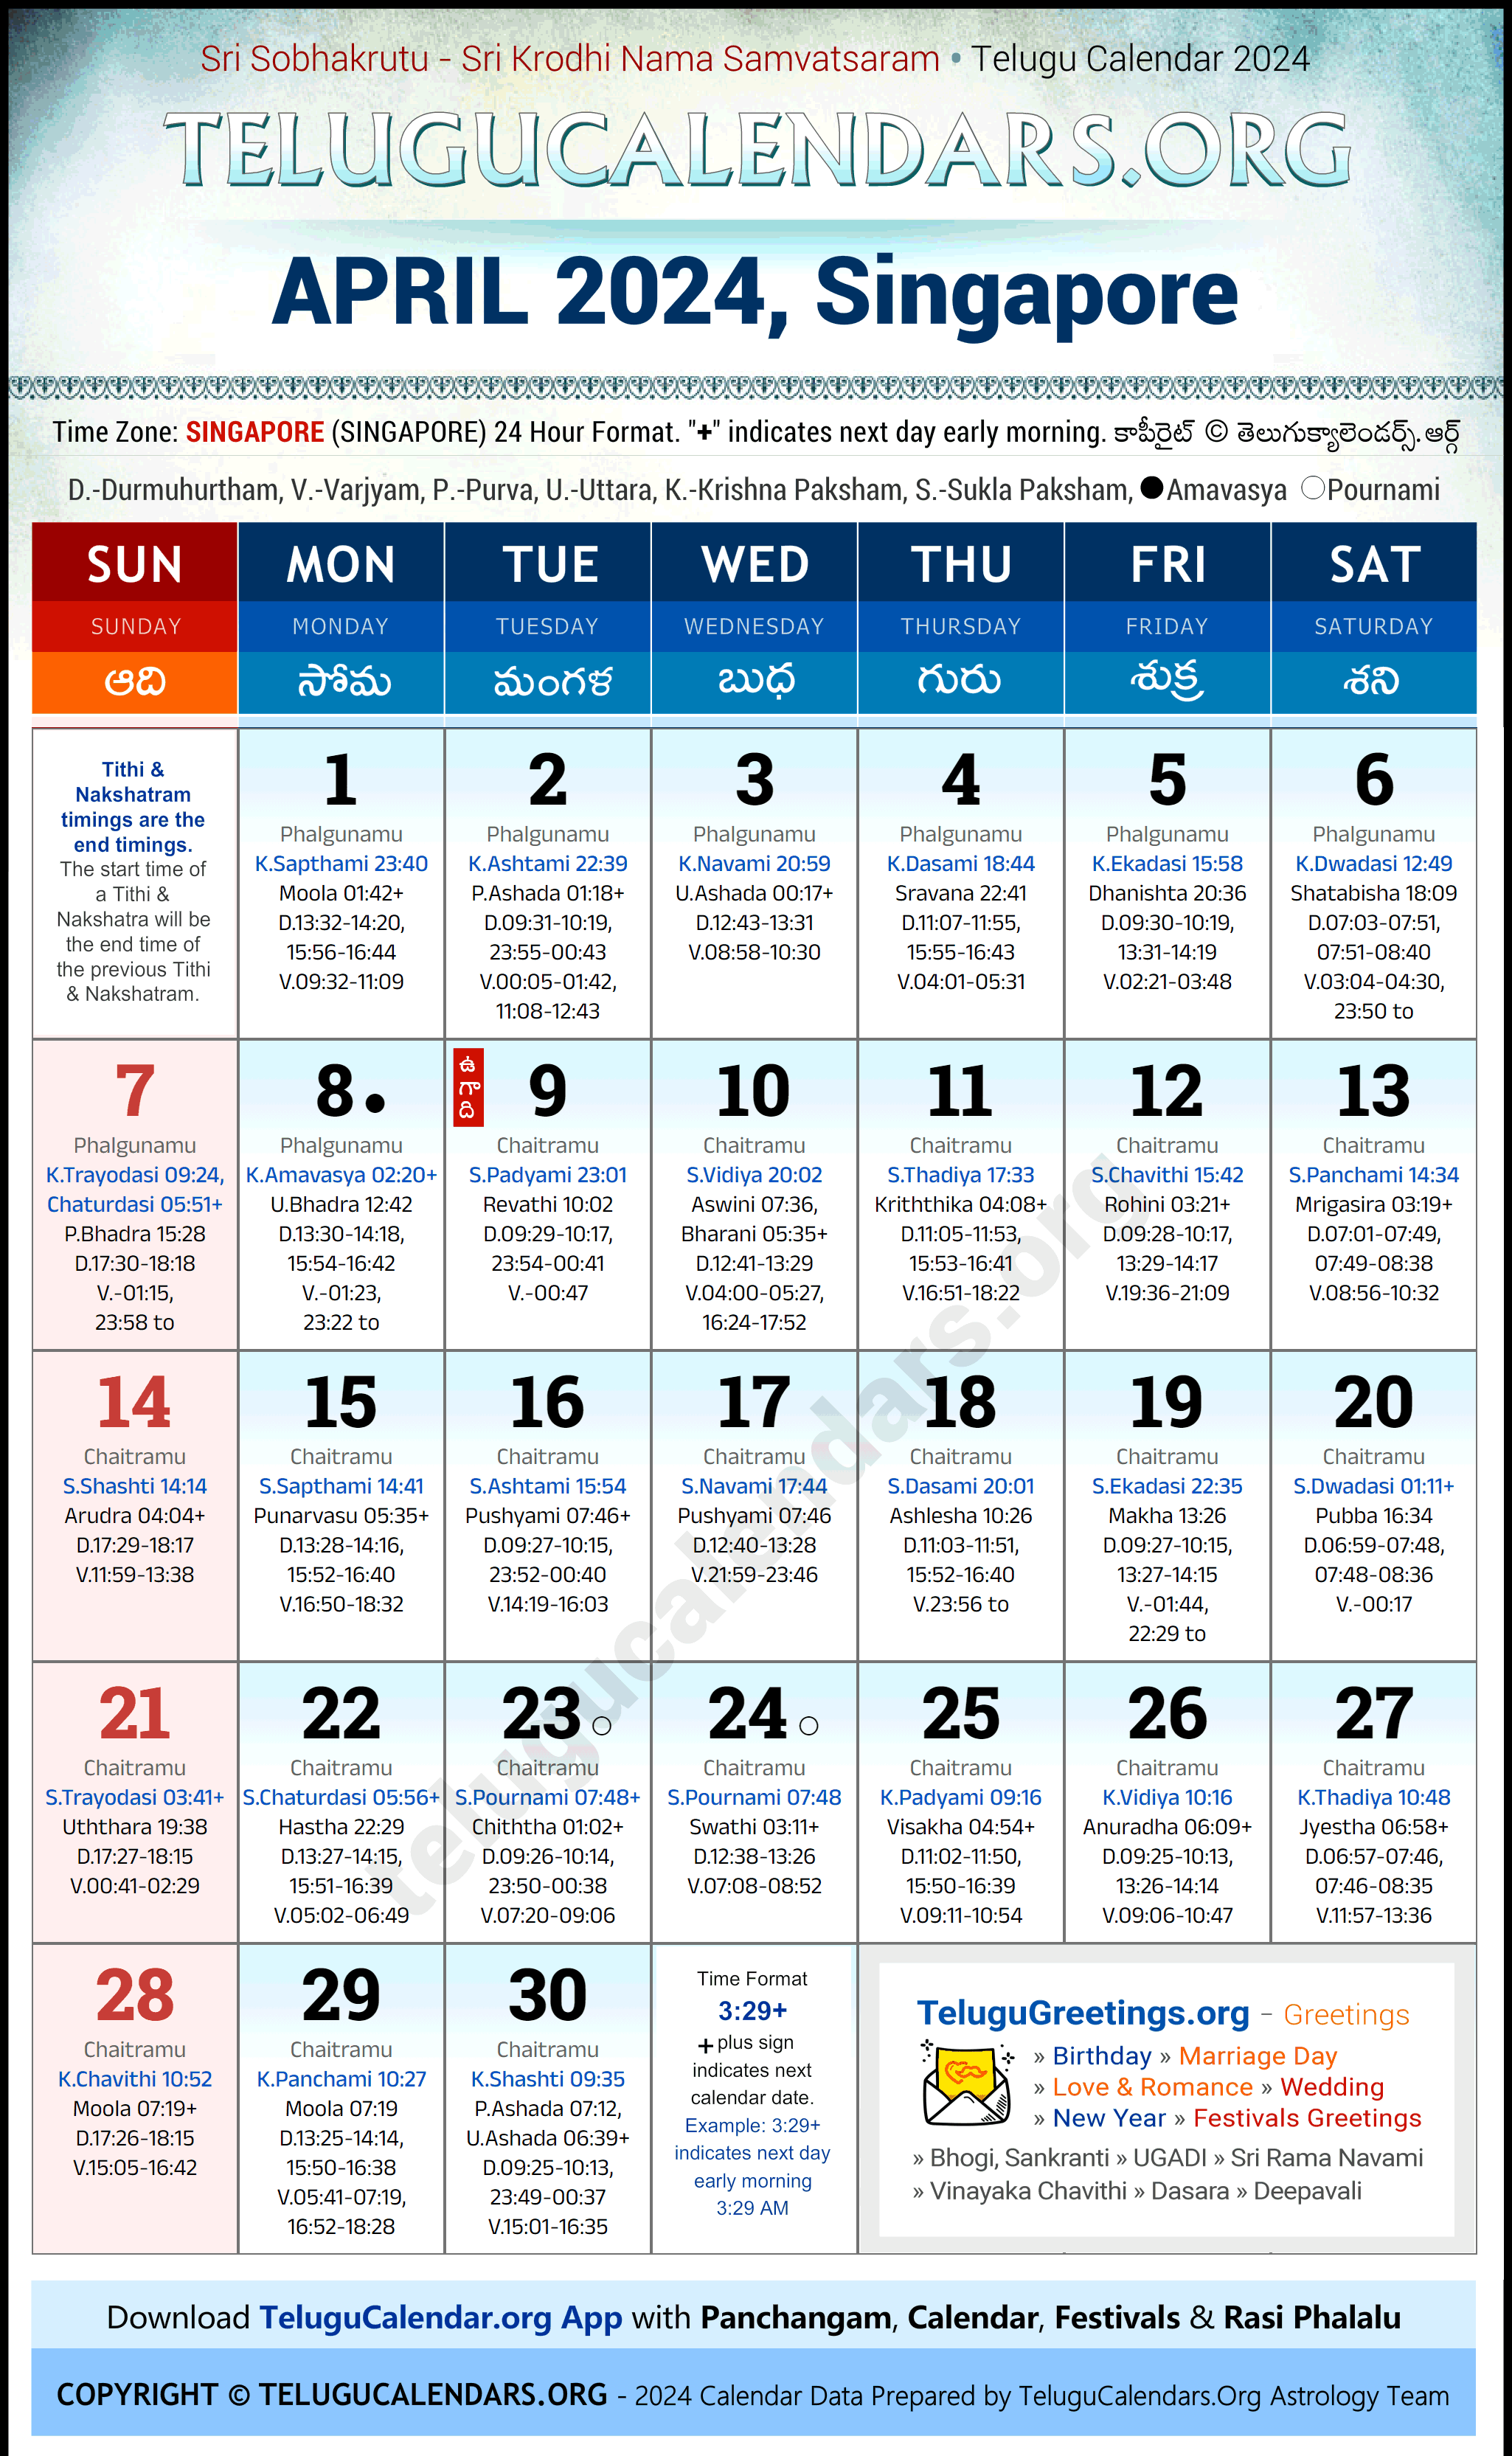 Telugu Calendar 2024 April Festivals for Singapore